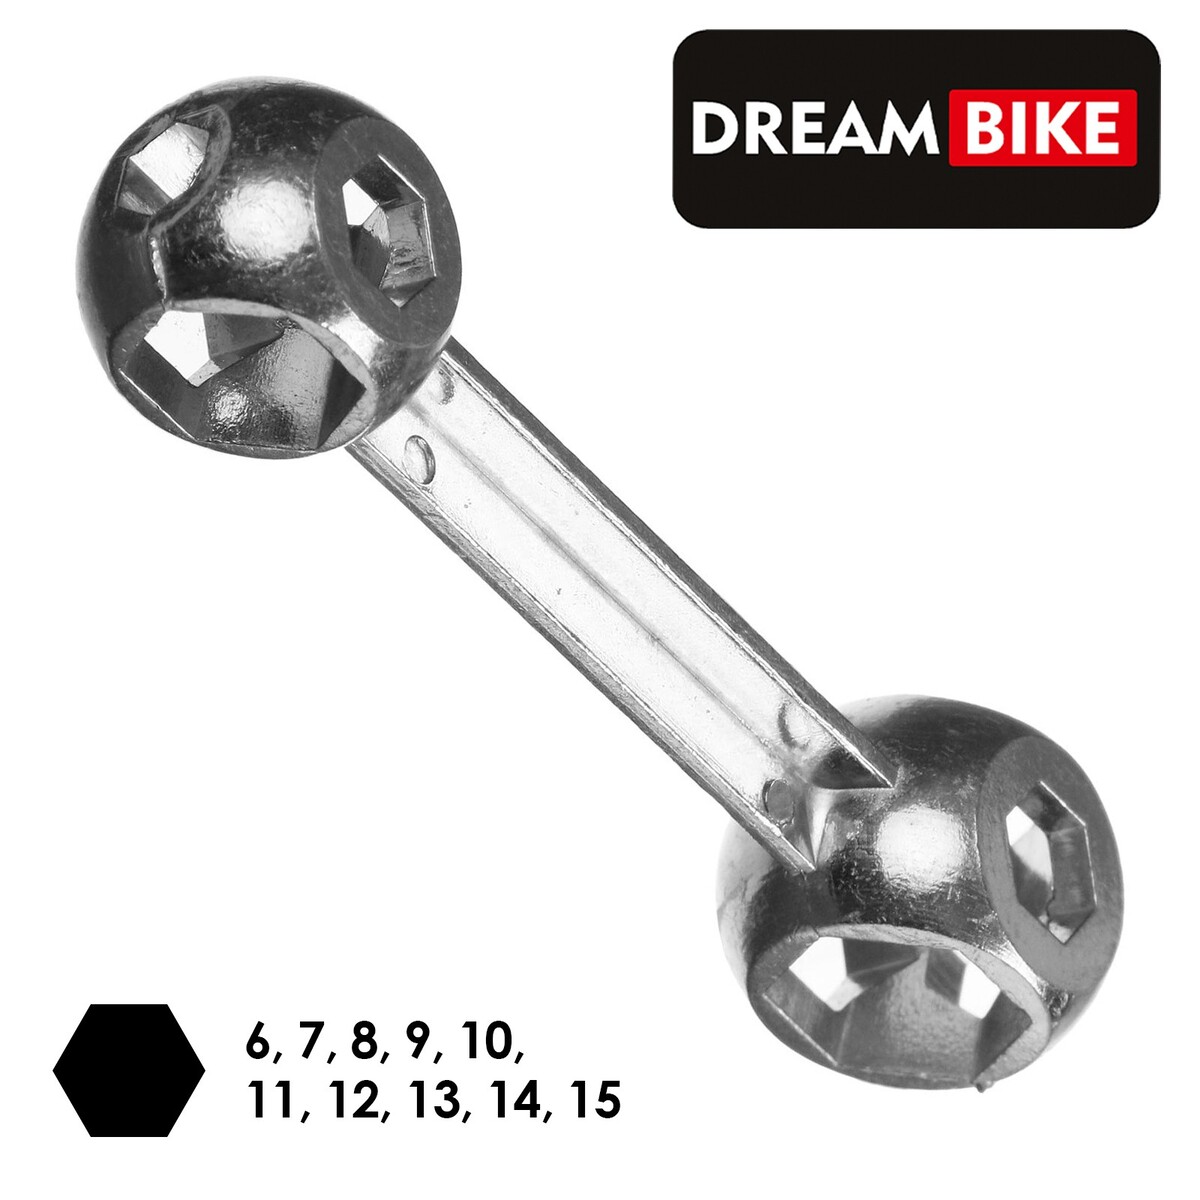 Ключ dream bike, Dream Bike